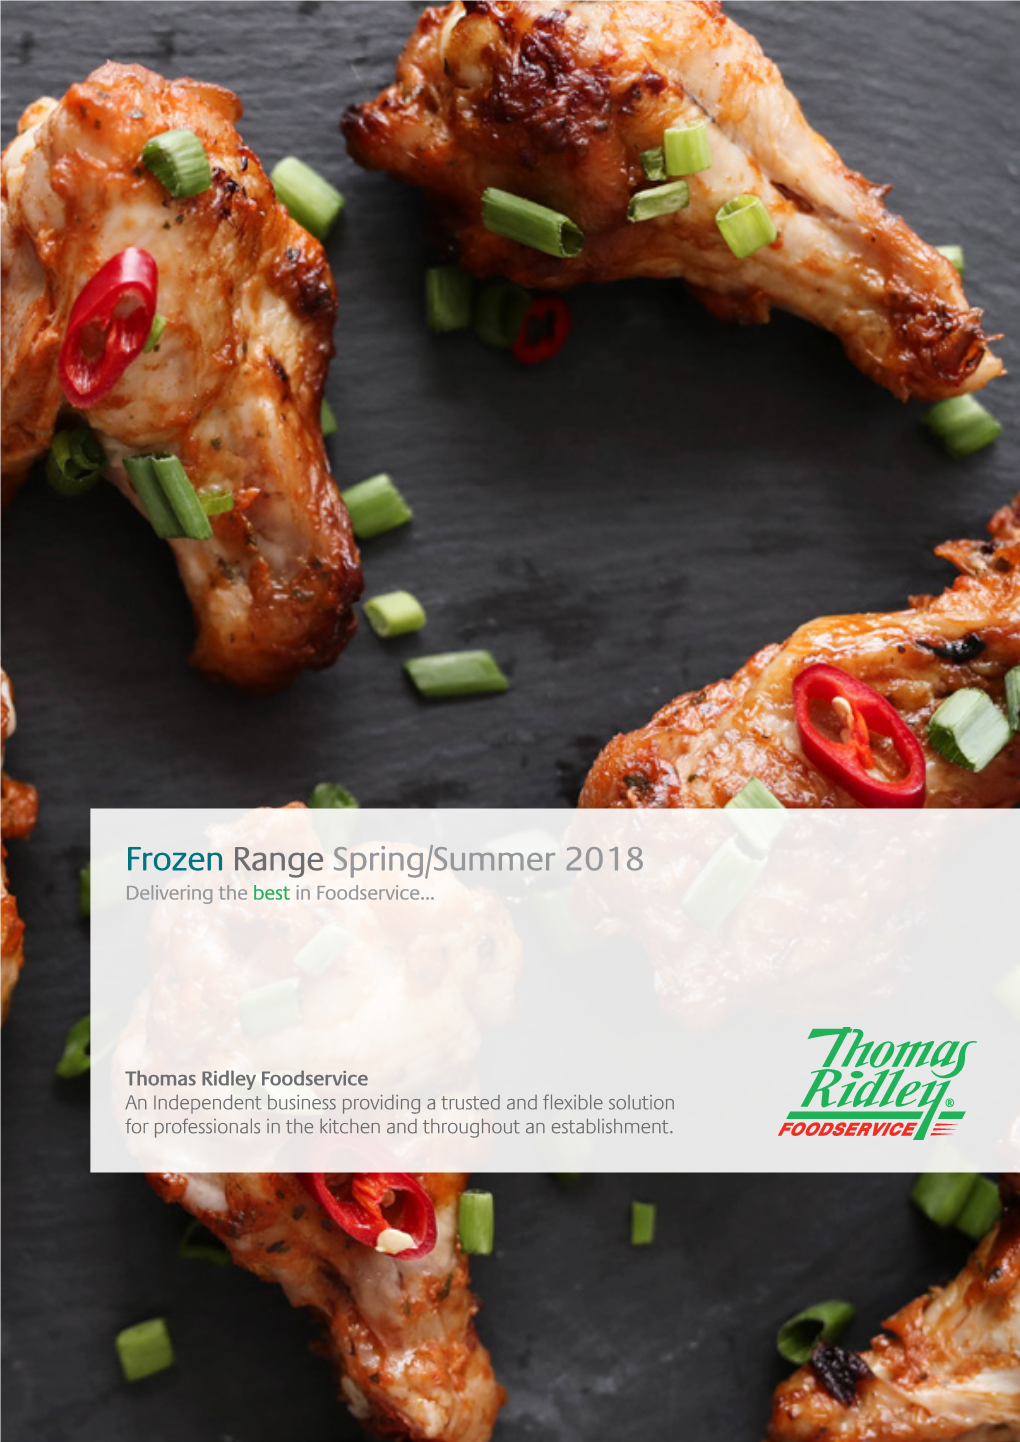 Frozen Range Spring/Summer 2018 Delivering the Best in Foodservice